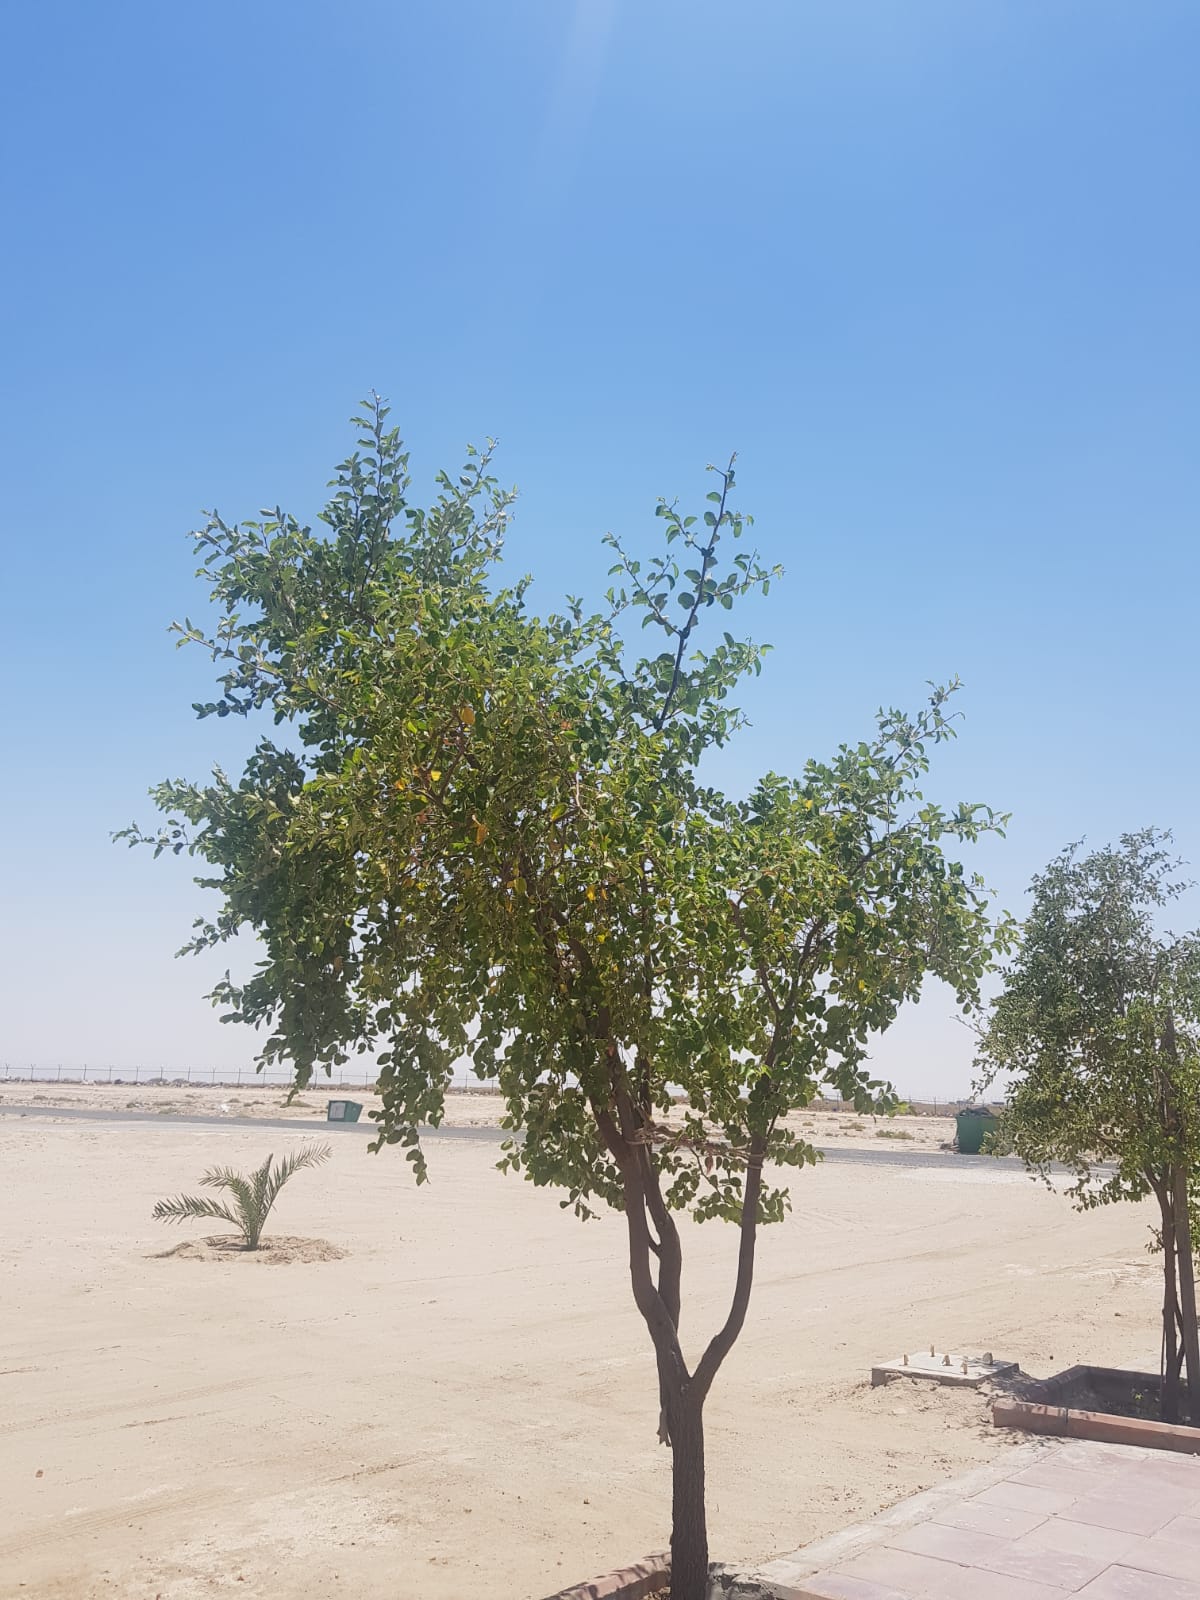 كونا السدرة شجرة مباركة غرسها الكويتيون في بيوتهم لفوائدها